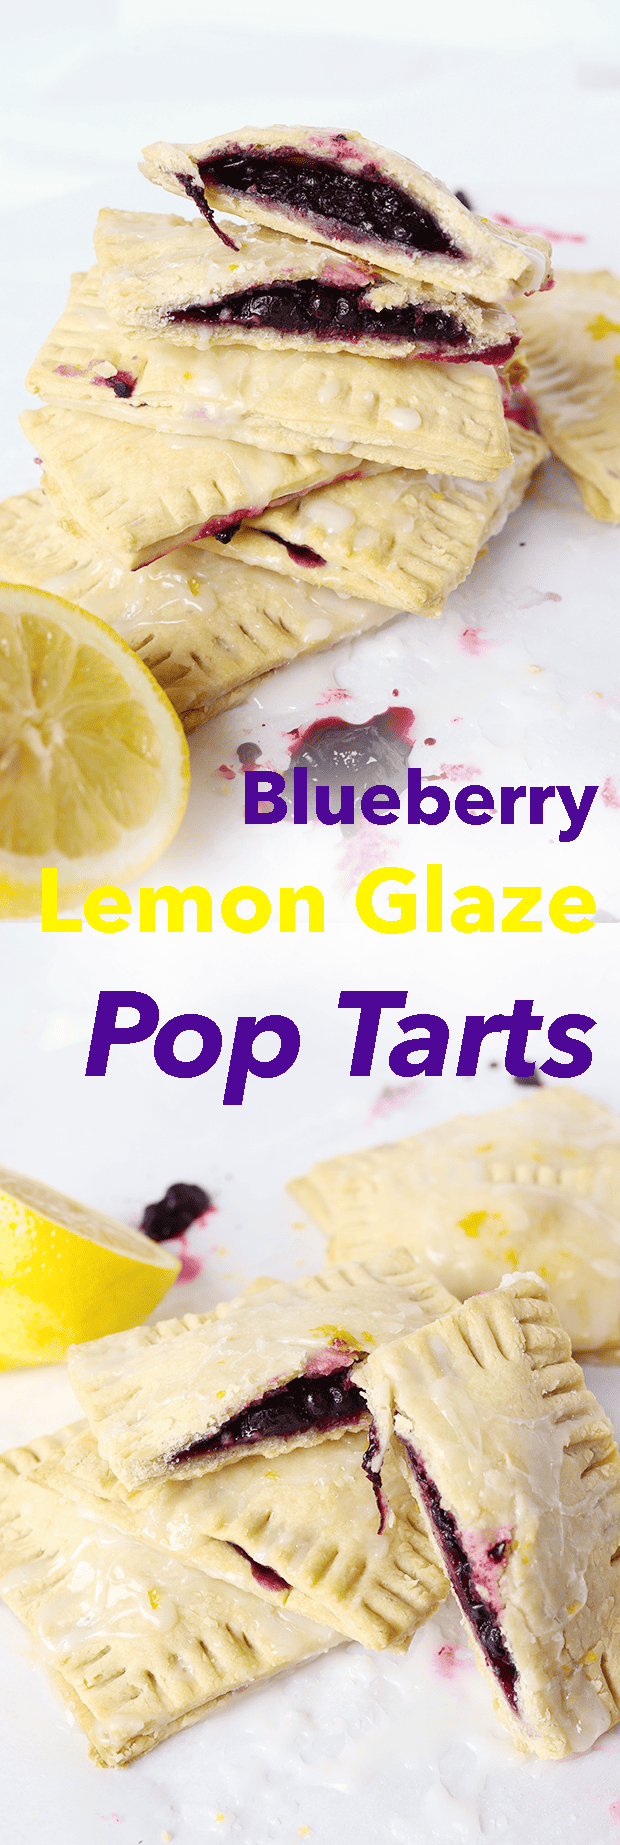 Blueberry Lemon Glaze Pop Tarts!